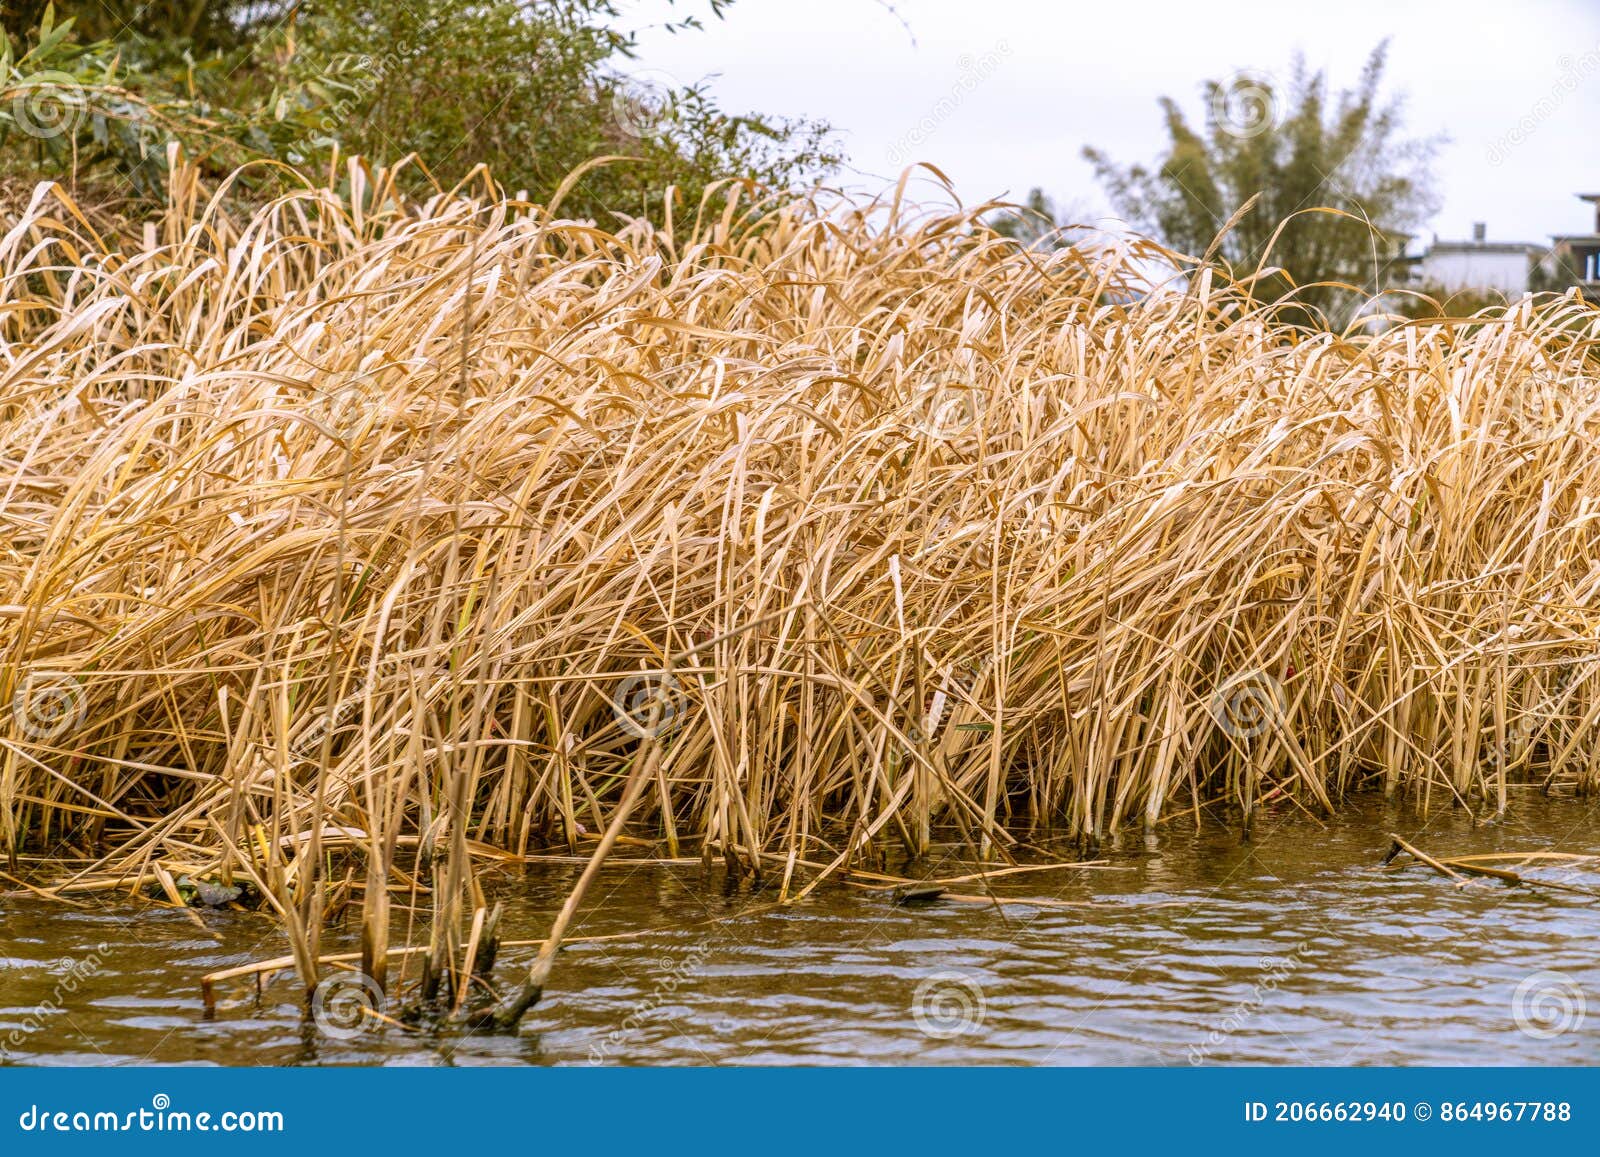 秋季水边的金黄色的芦苇丛The Golden Reeds by the Water in Autumn Stock Photo - Image of  branches, winter: 206662940